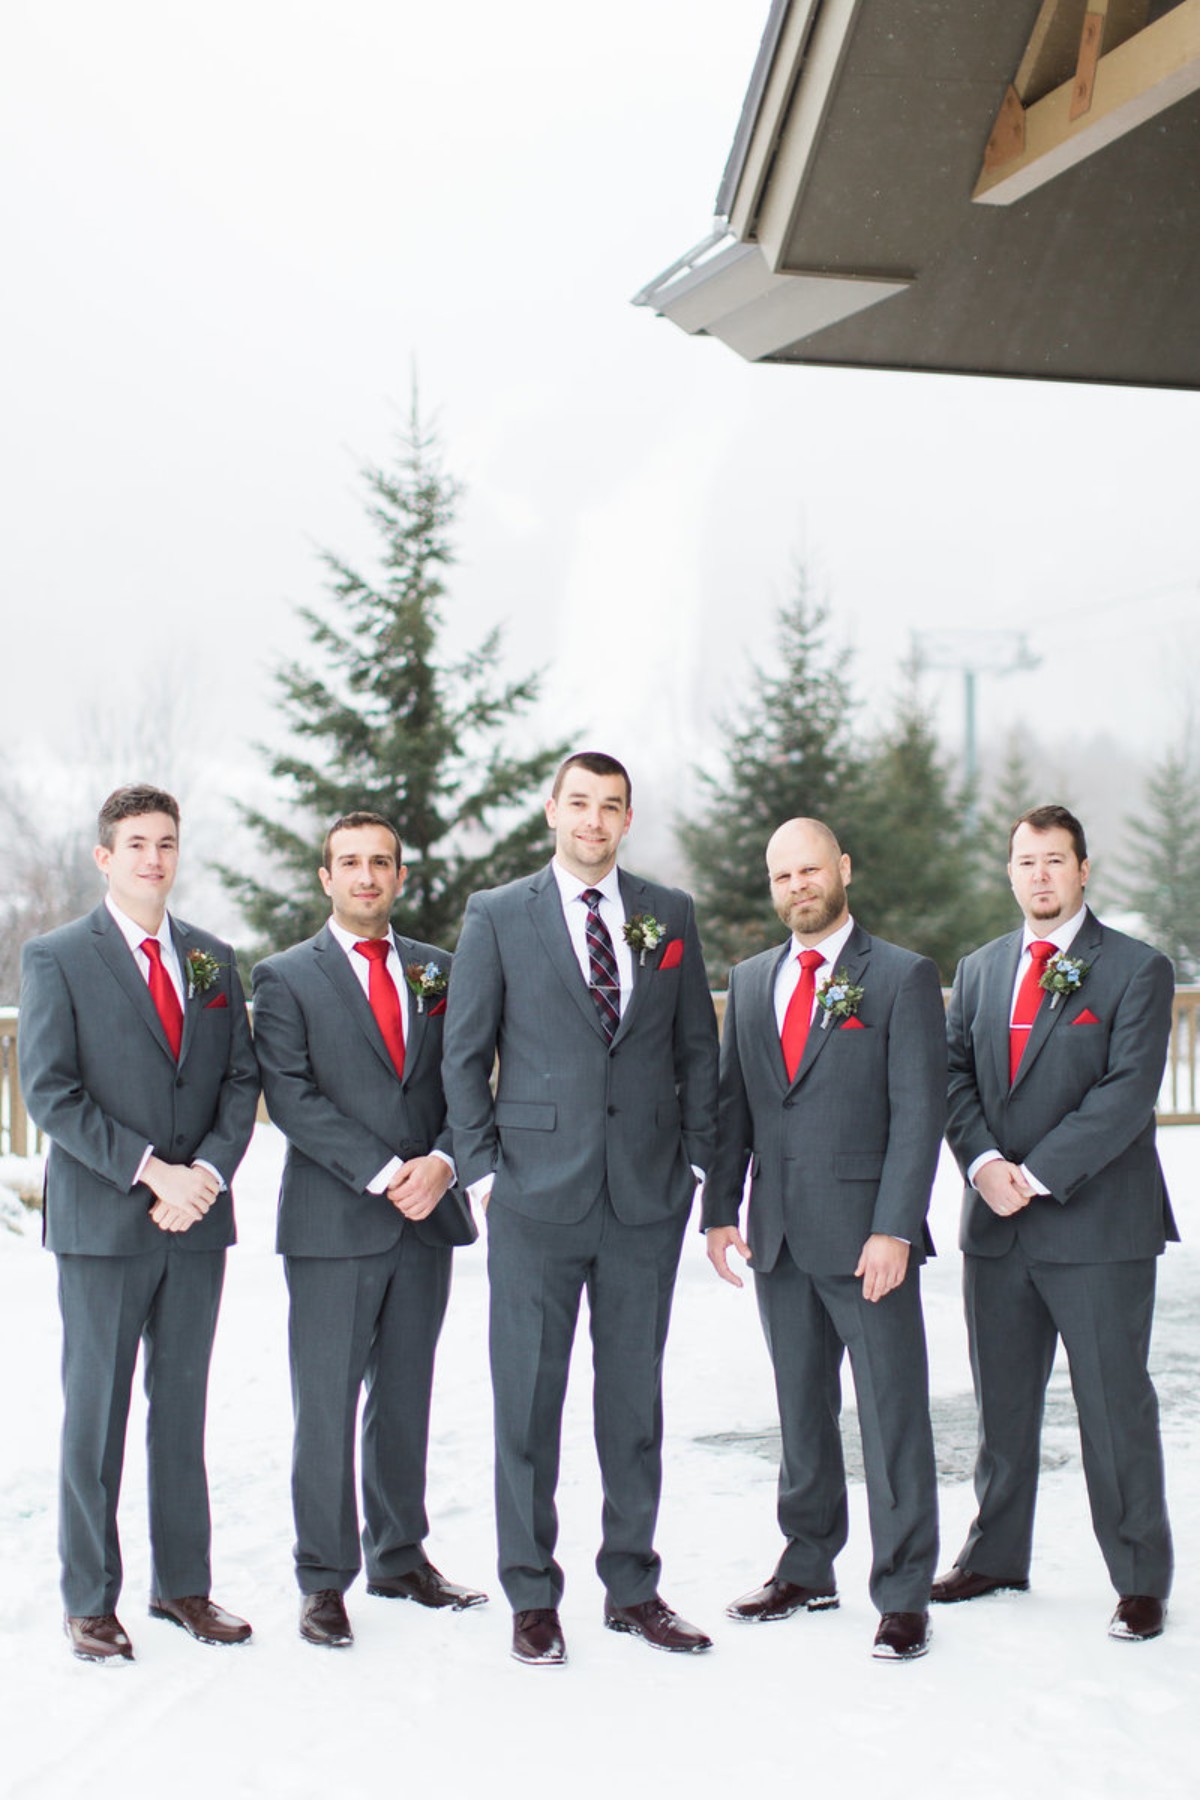 Winter wedding groomsmen look